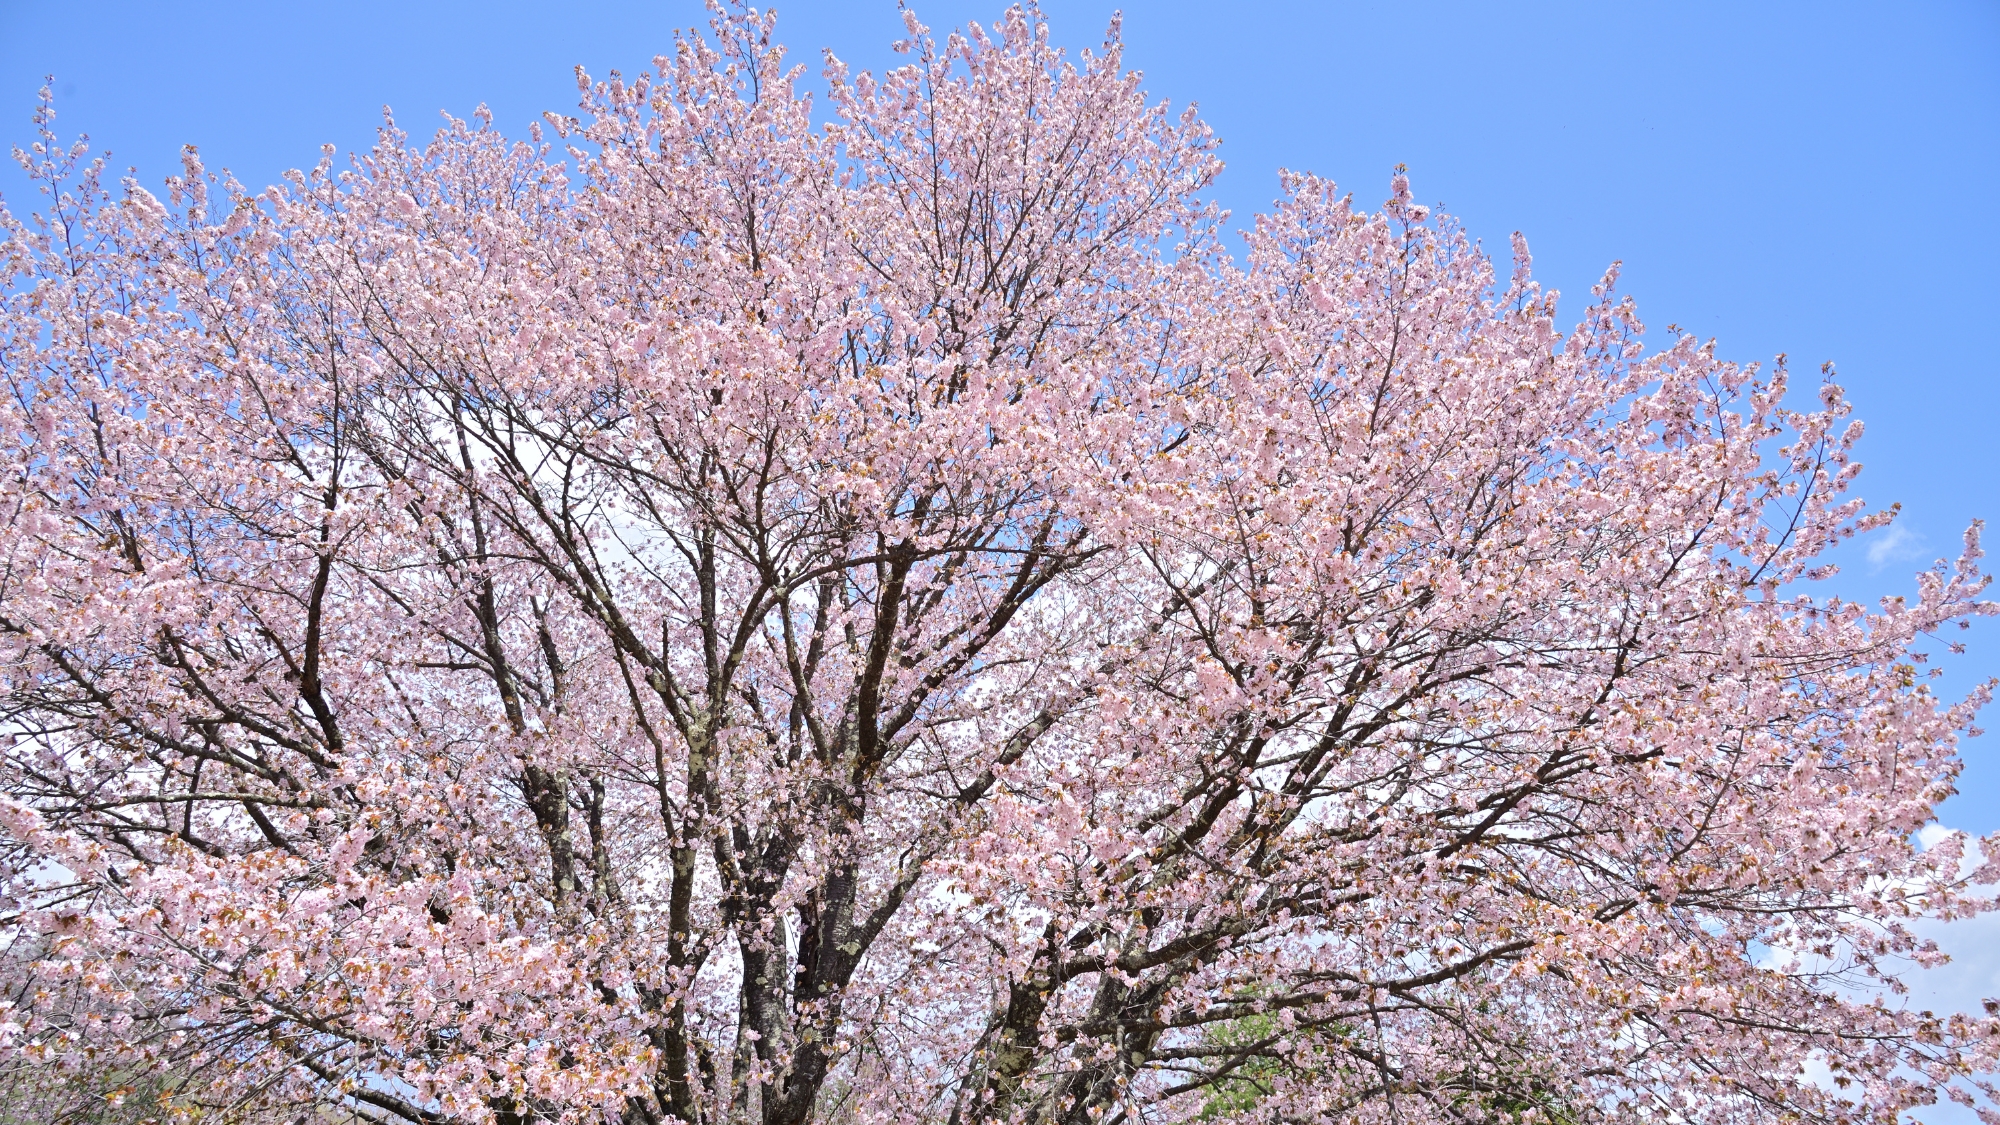 標高の高い蔵王ではGWに桜の見頃を迎えます